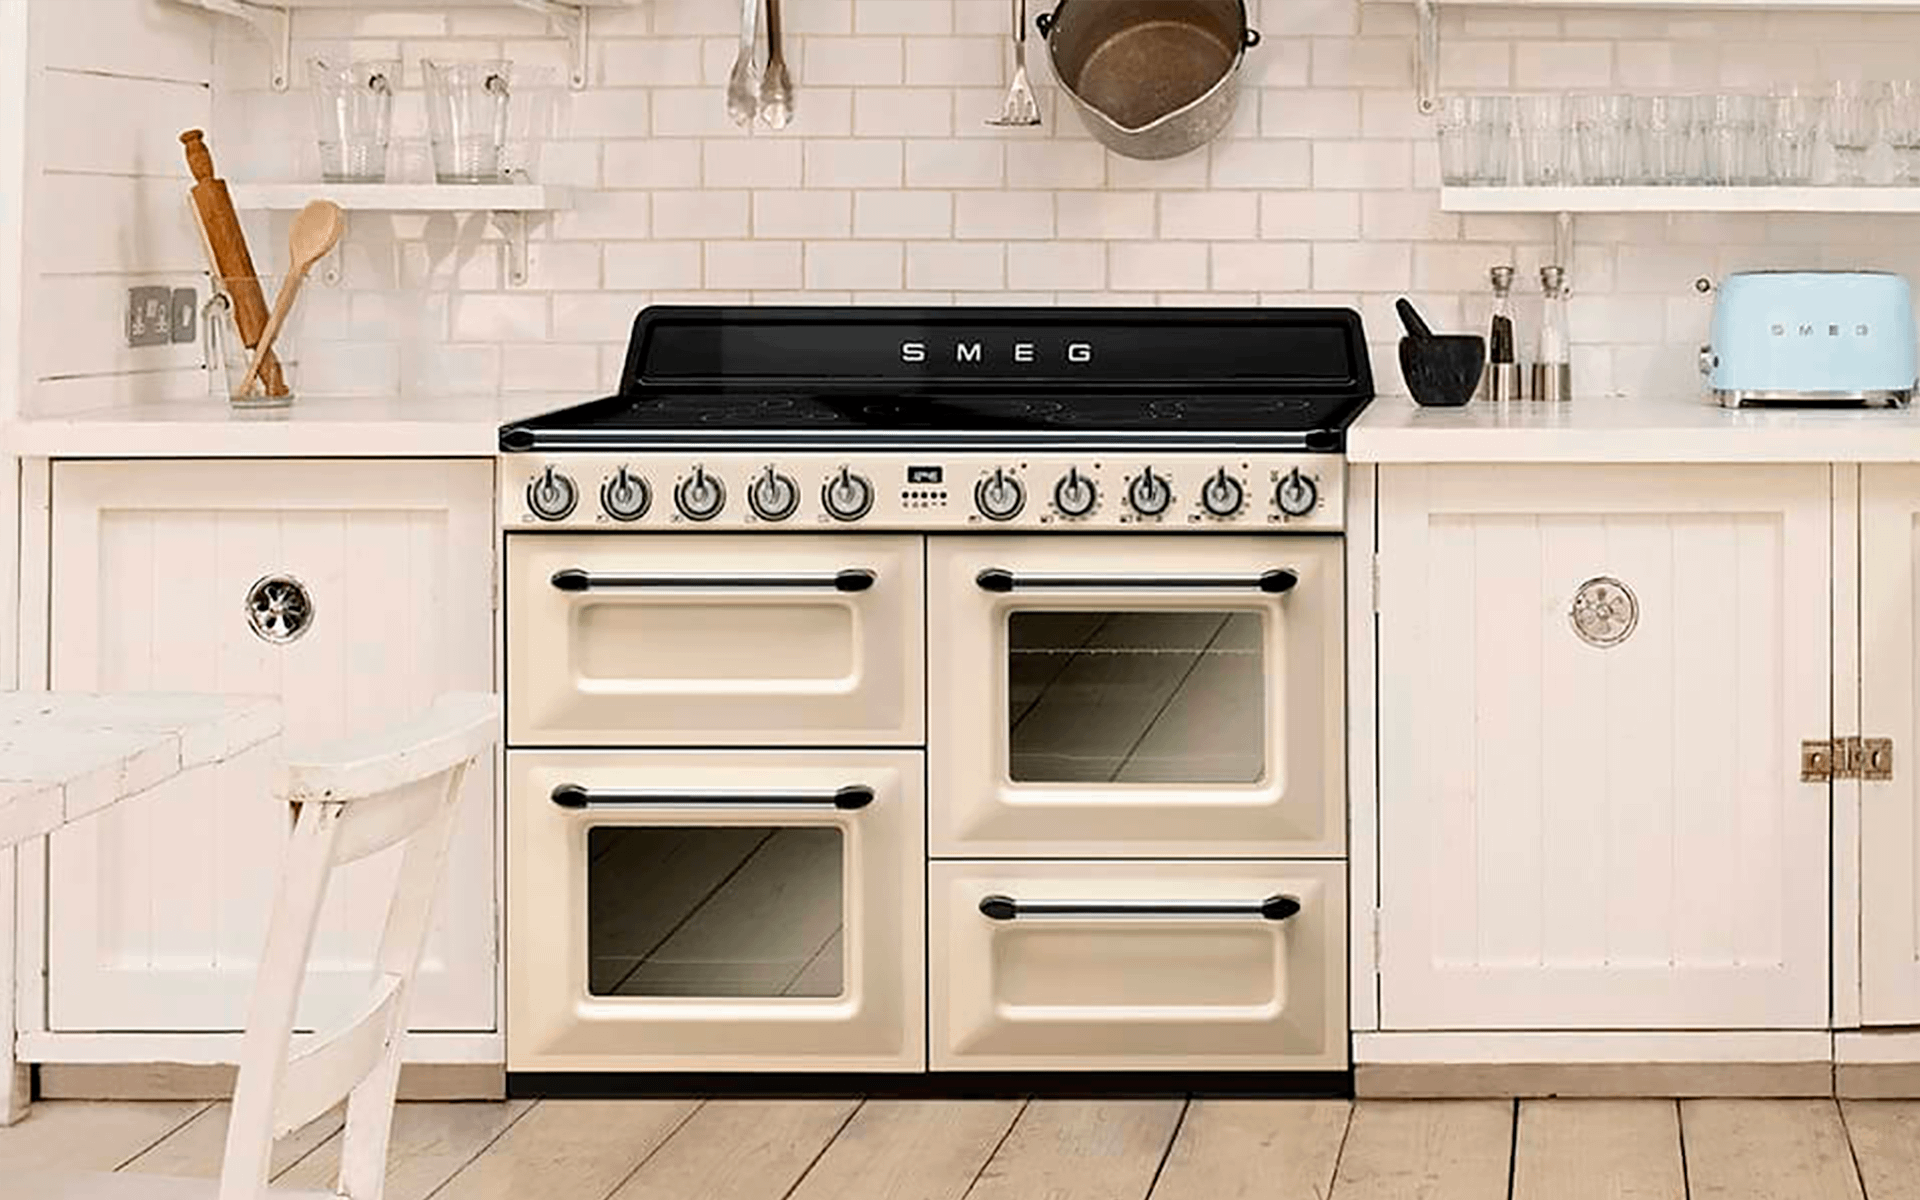 Smeg range cooker built into white kitchen